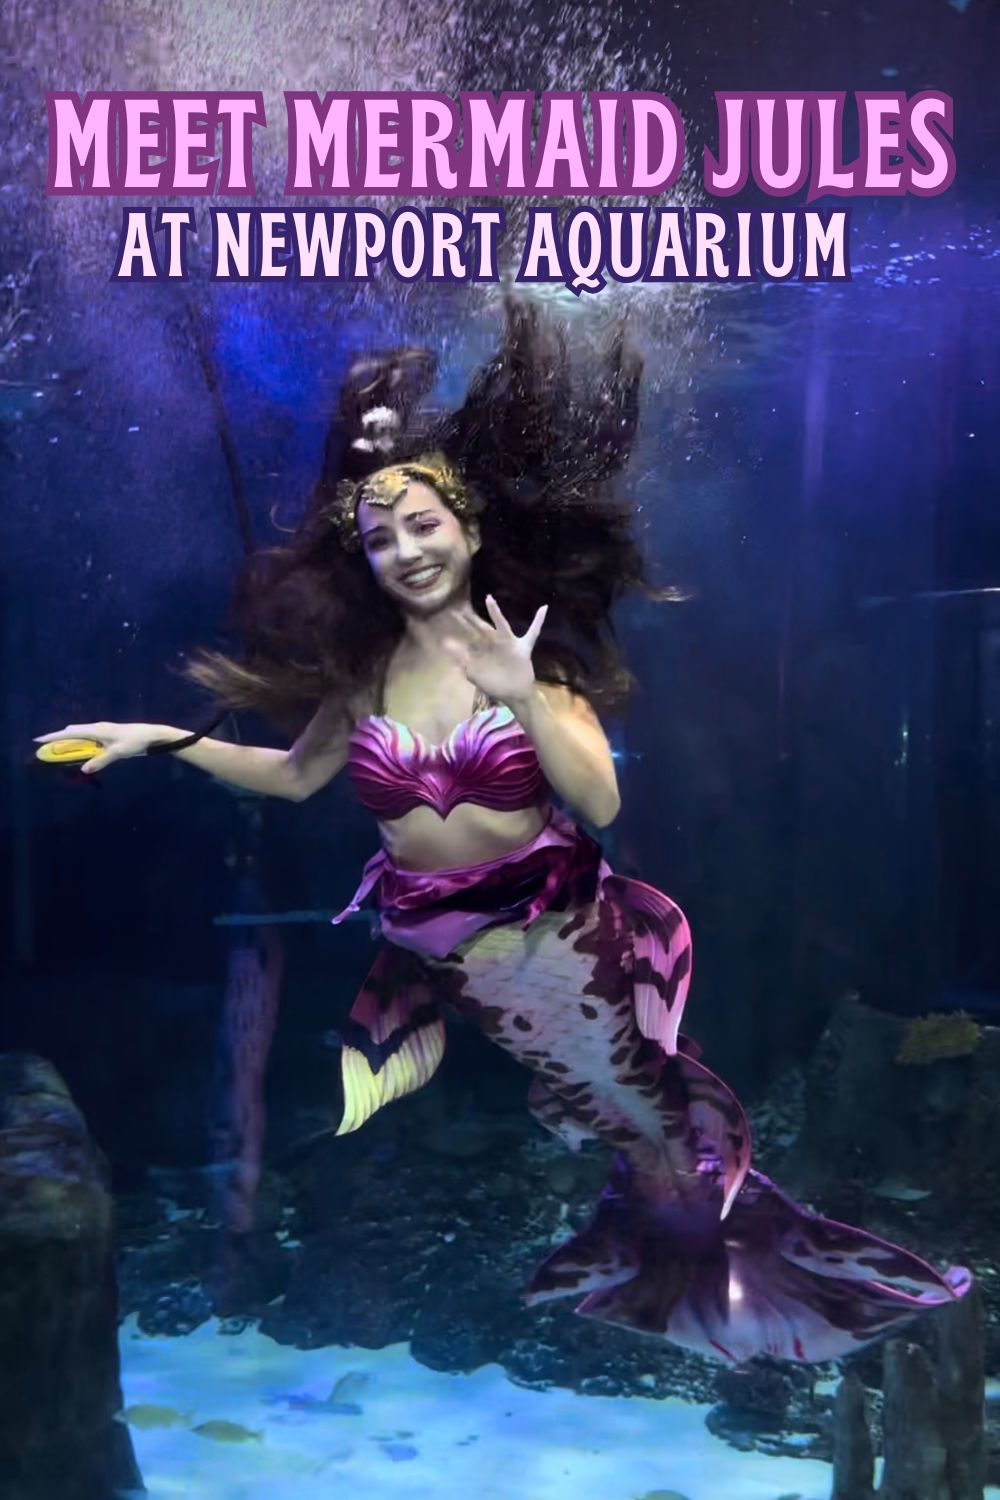 Meet Mermaid Jules at Newport Aquarium